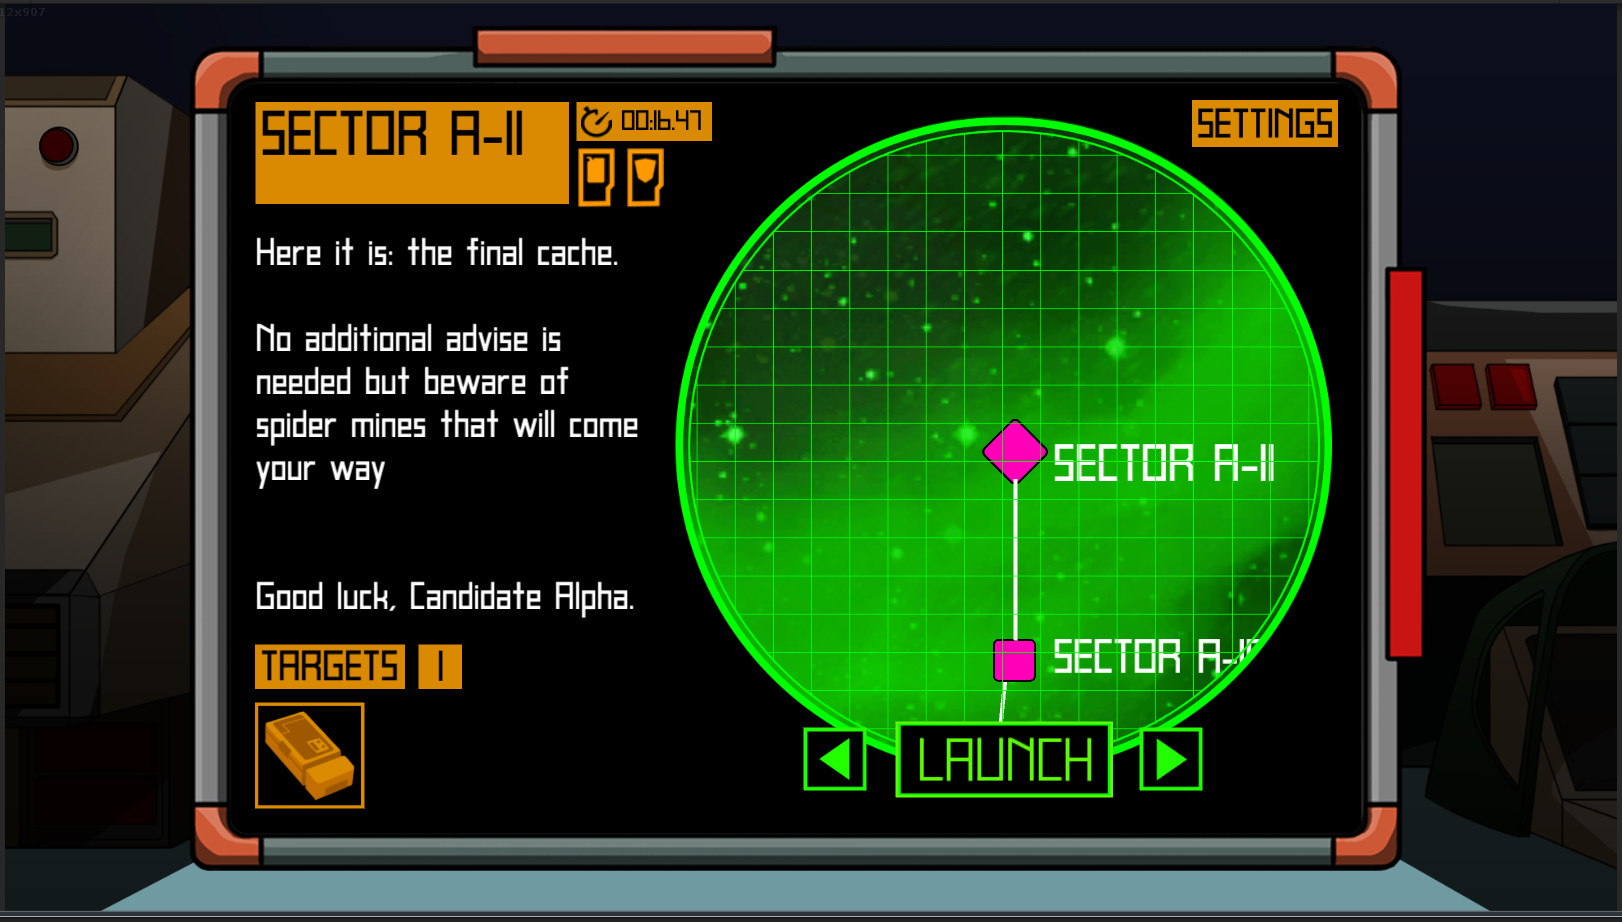 VIOLET: Space Mission screenshot